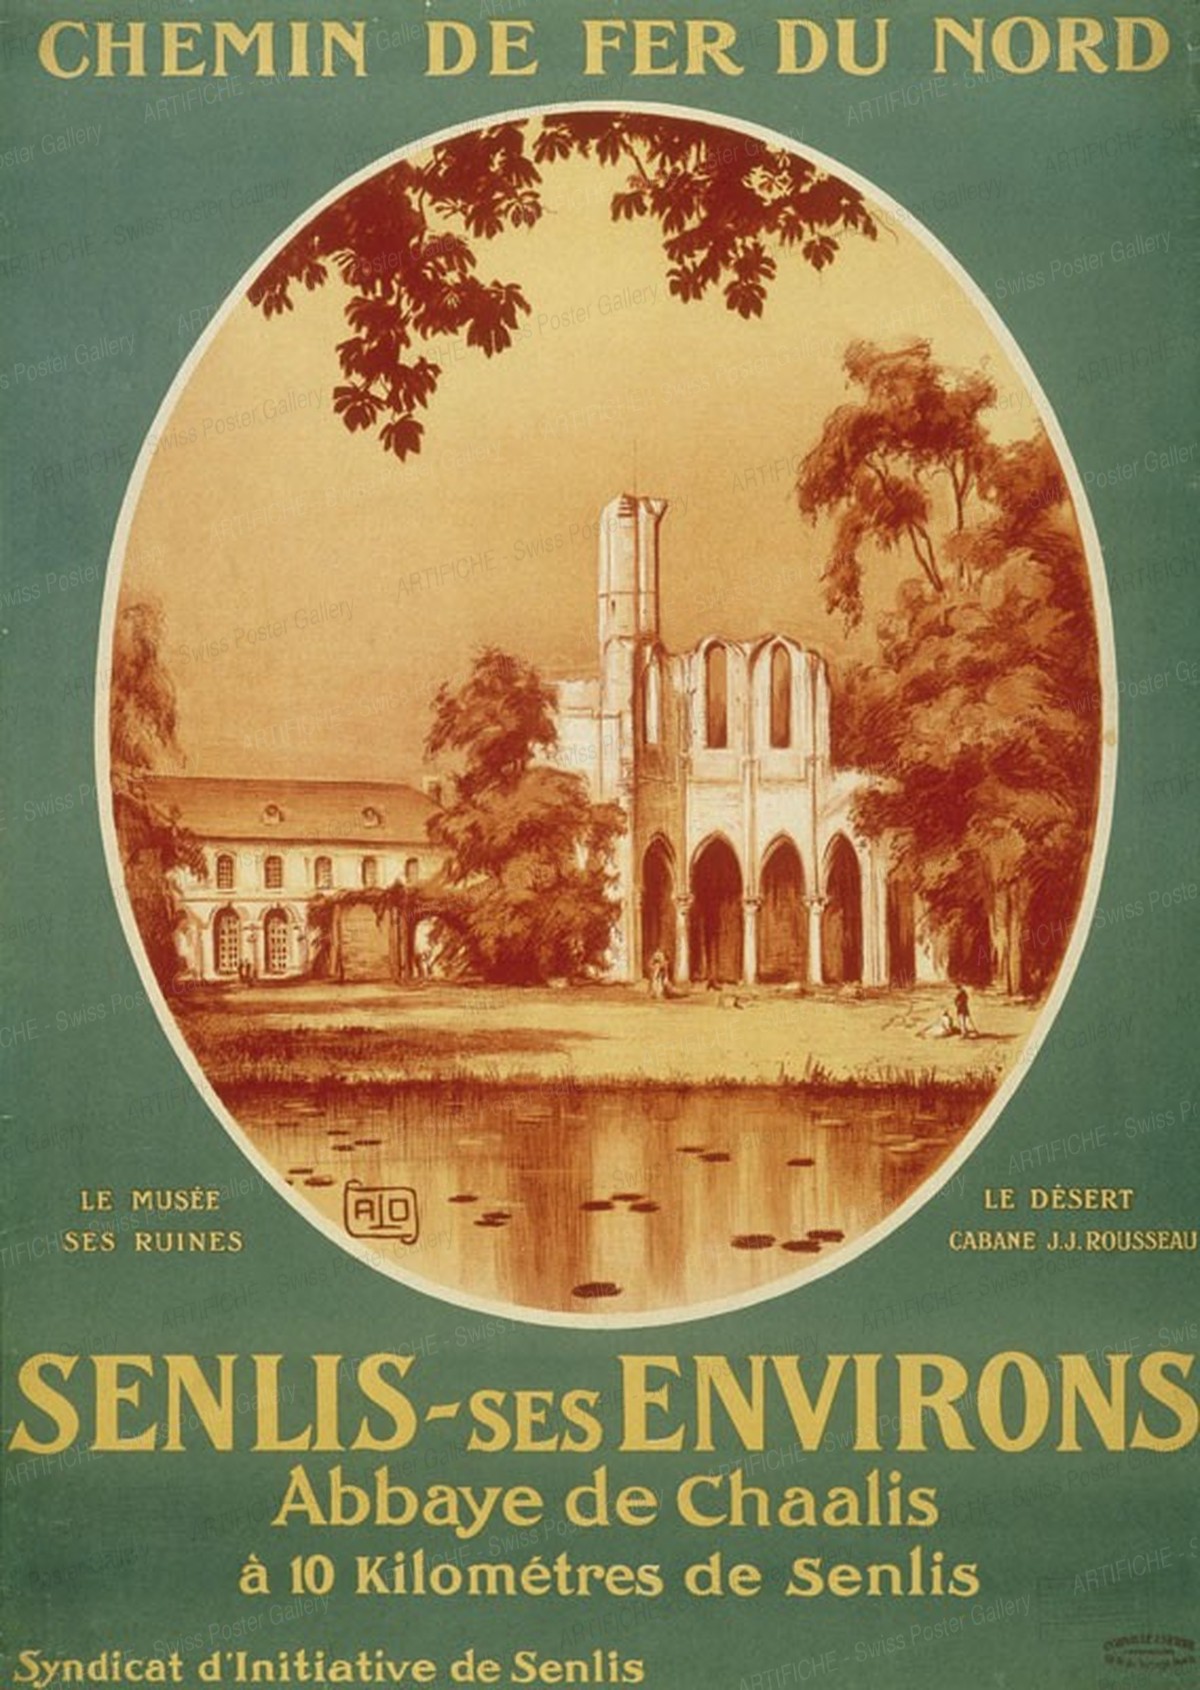 Chemin de Fer du Nord – Senlis – ses environs – Abbaye de Chaalis – le musée – ses ruines – le désert – cabane J.J. Rousseau, Alo